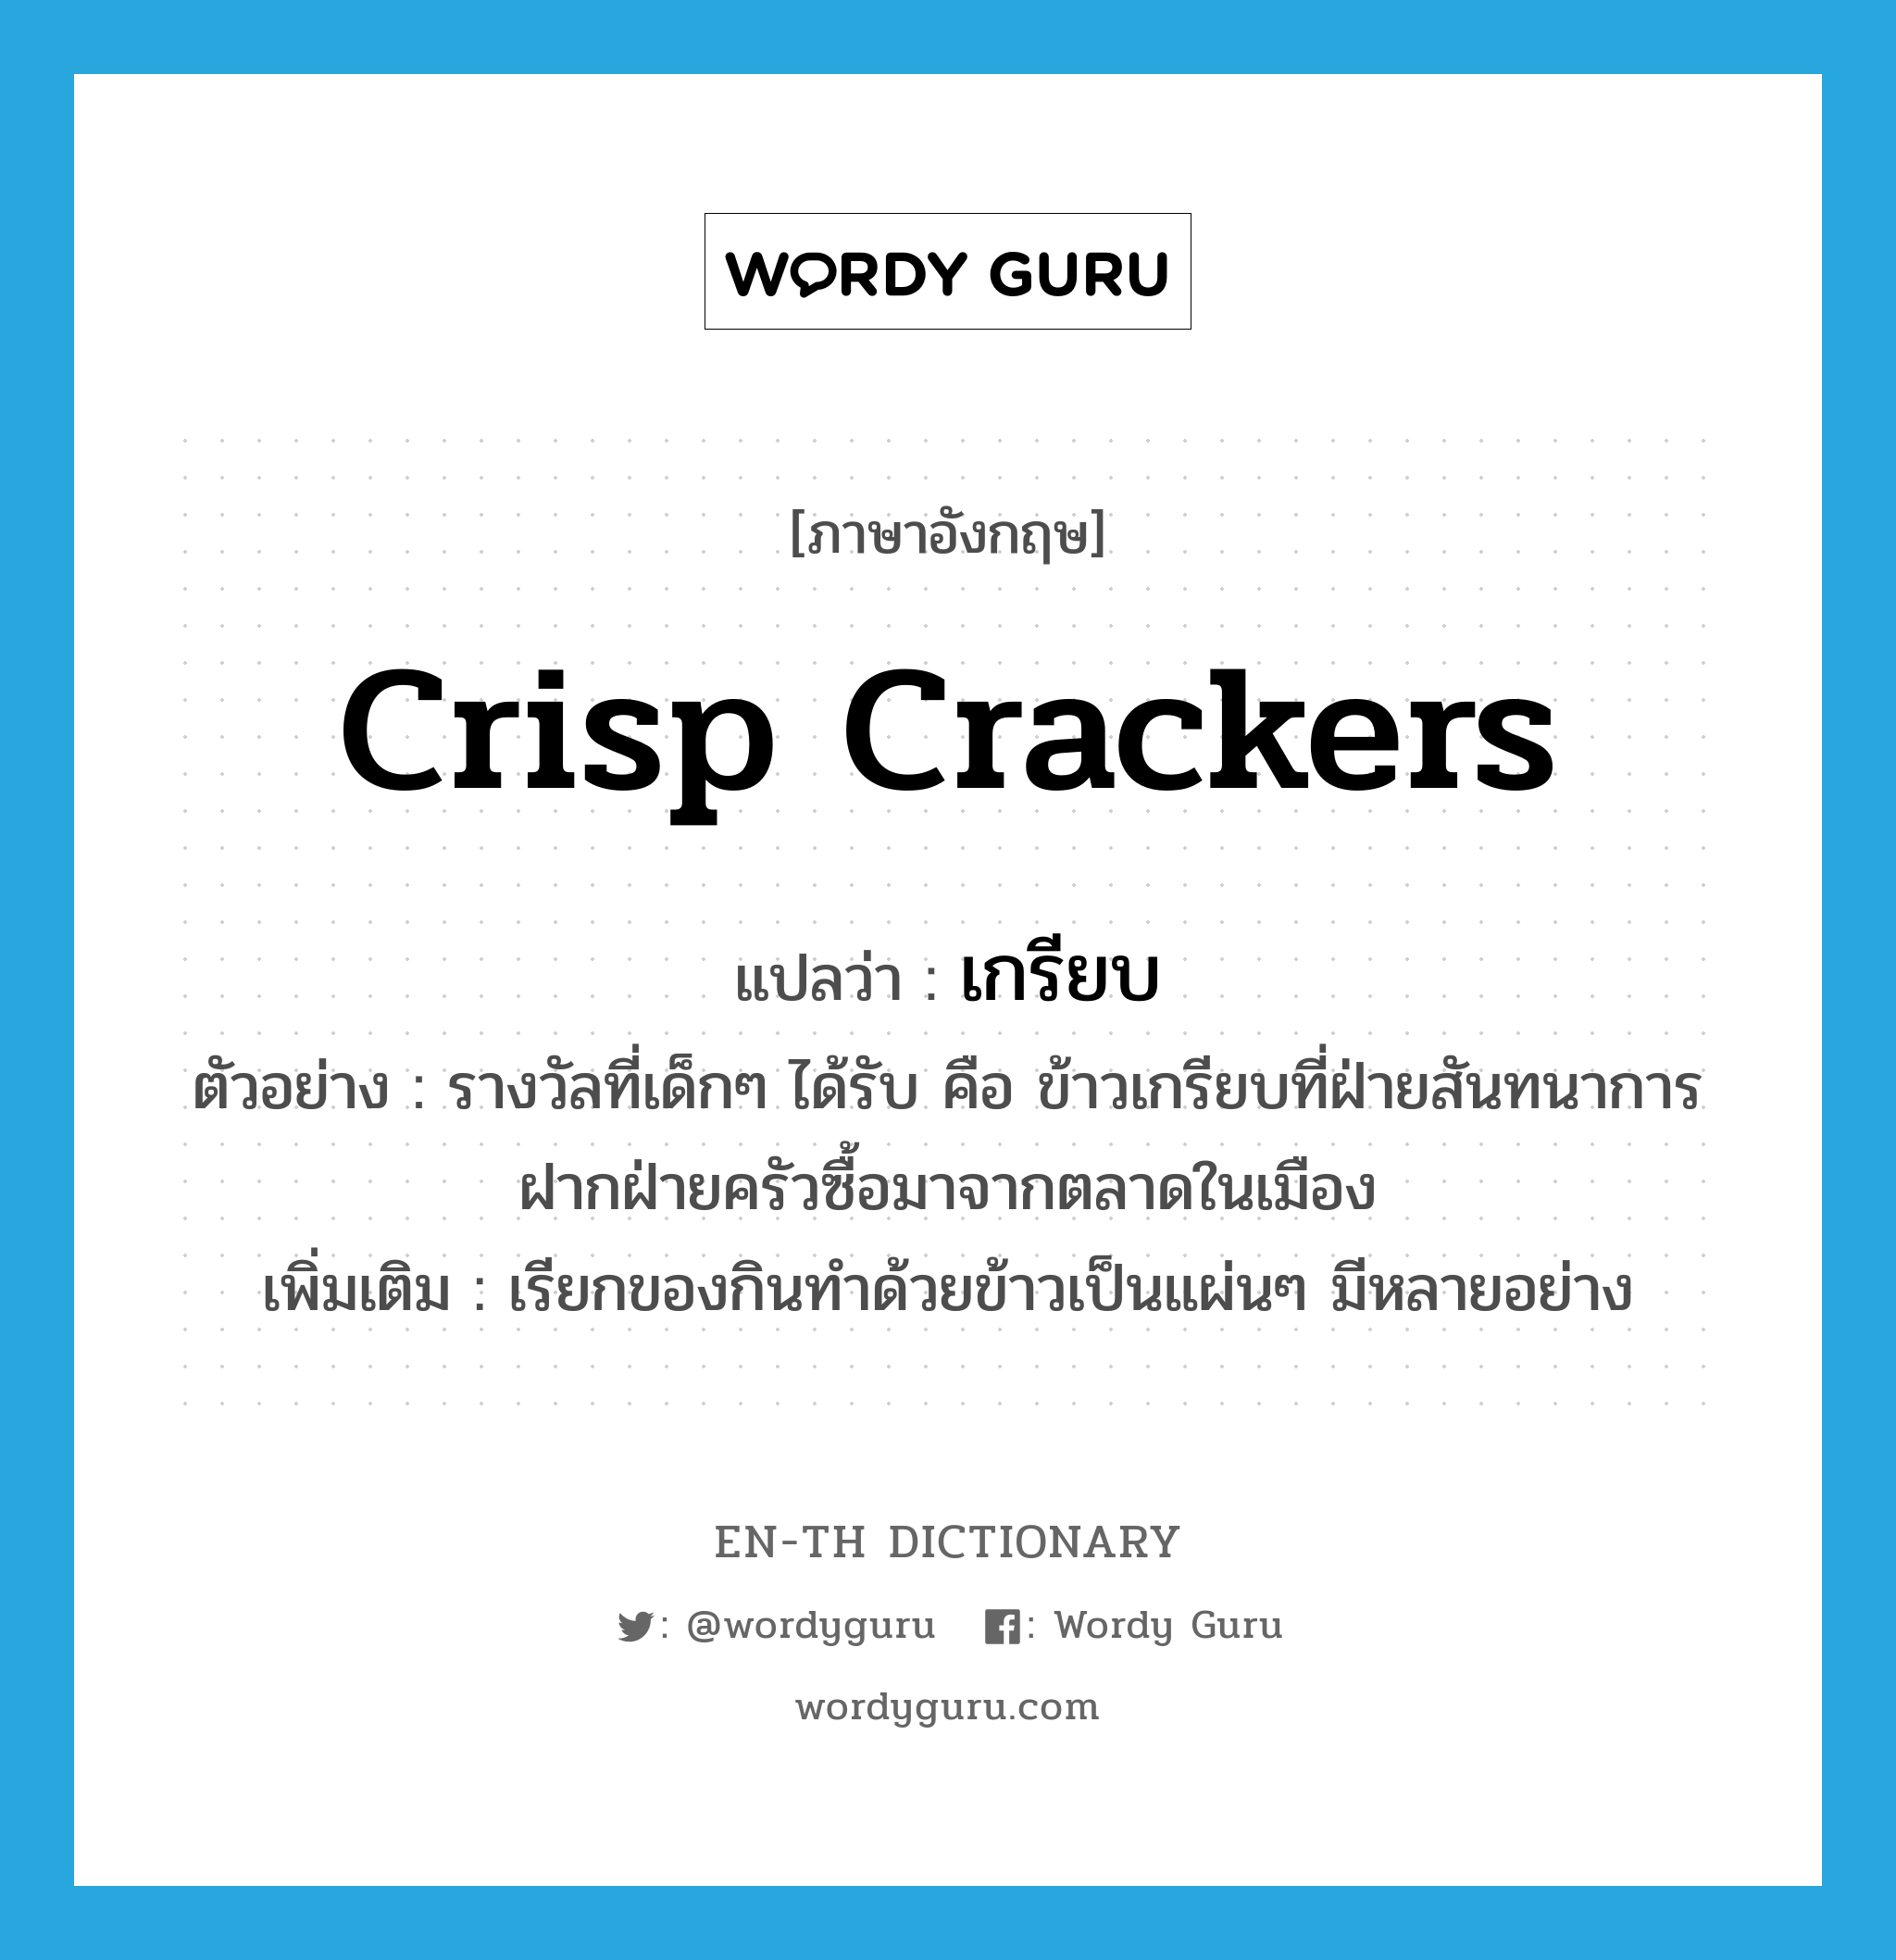 เกรียบ ภาษาอังกฤษ?, คำศัพท์ภาษาอังกฤษ เกรียบ แปลว่า crisp crackers ประเภท N ตัวอย่าง รางวัลที่เด็กๆ ได้รับ คือ ข้าวเกรียบที่ฝ่ายสันทนาการฝากฝ่ายครัวซื้อมาจากตลาดในเมือง เพิ่มเติม เรียกของกินทำด้วยข้าวเป็นแผ่นๆ มีหลายอย่าง หมวด N